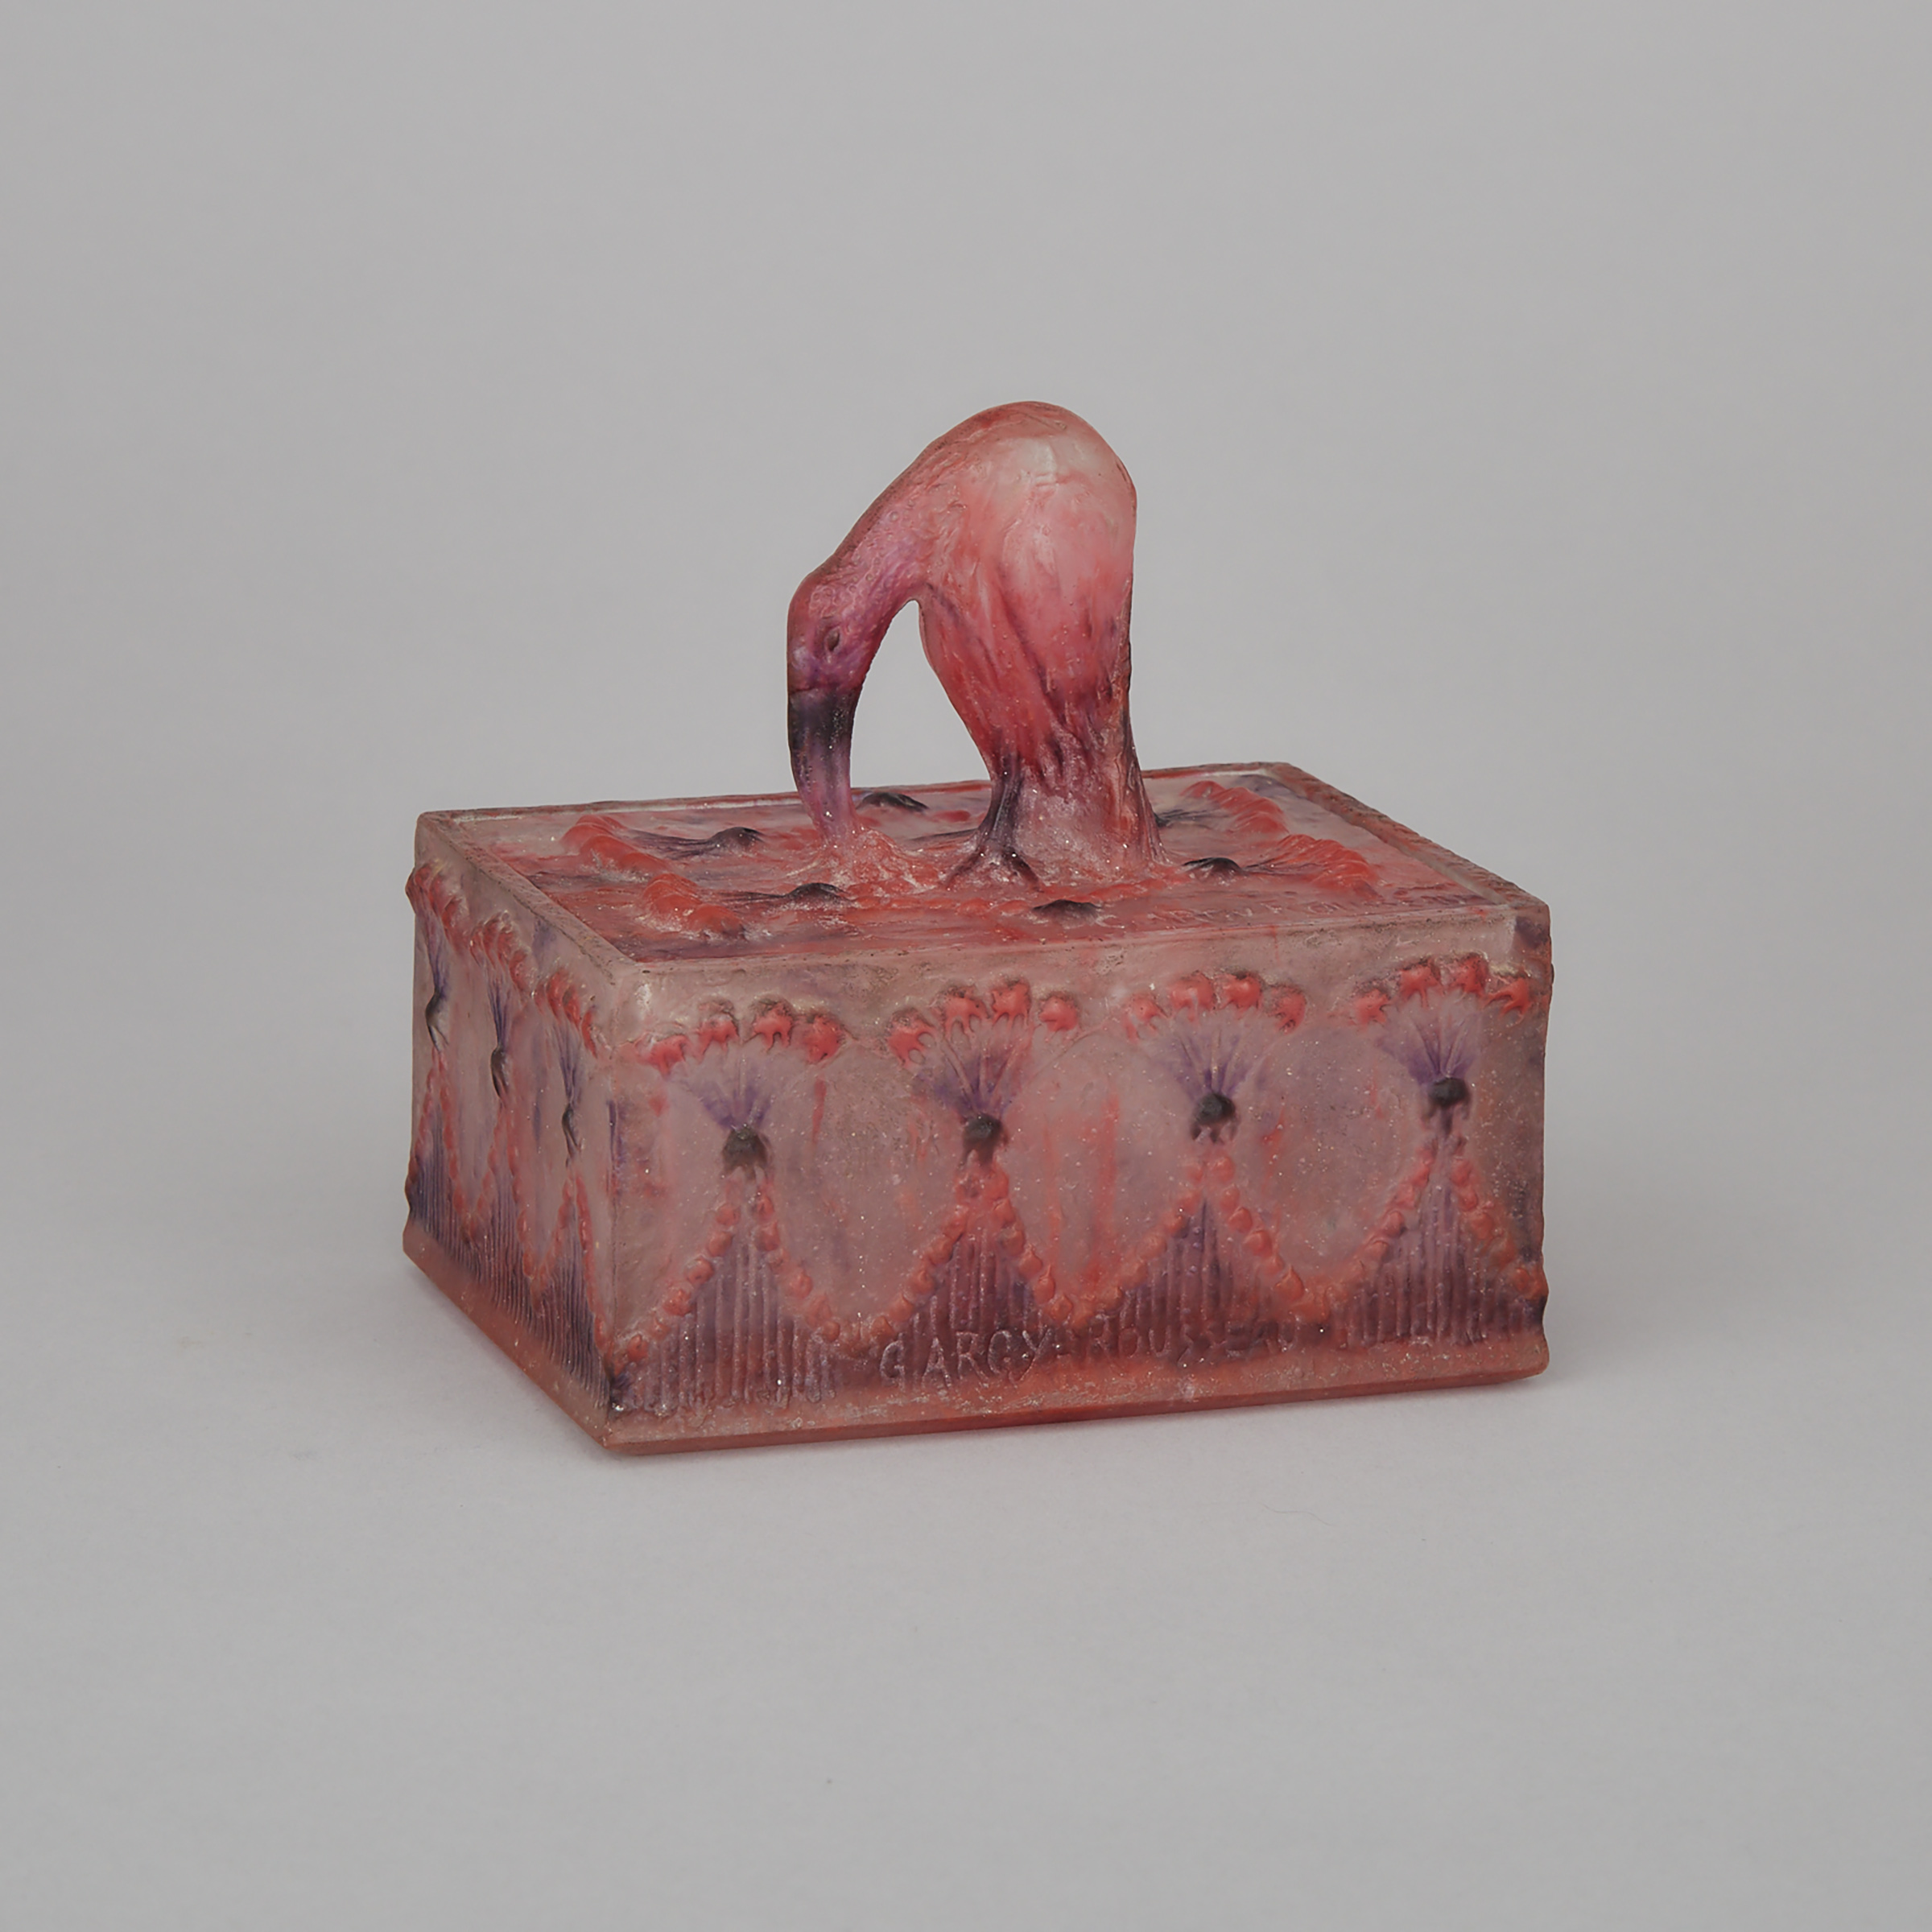 Gabriel Argy-Rousseau Pâte de Verre ‘Ibis’ Rectangular Covered Box, c.1920